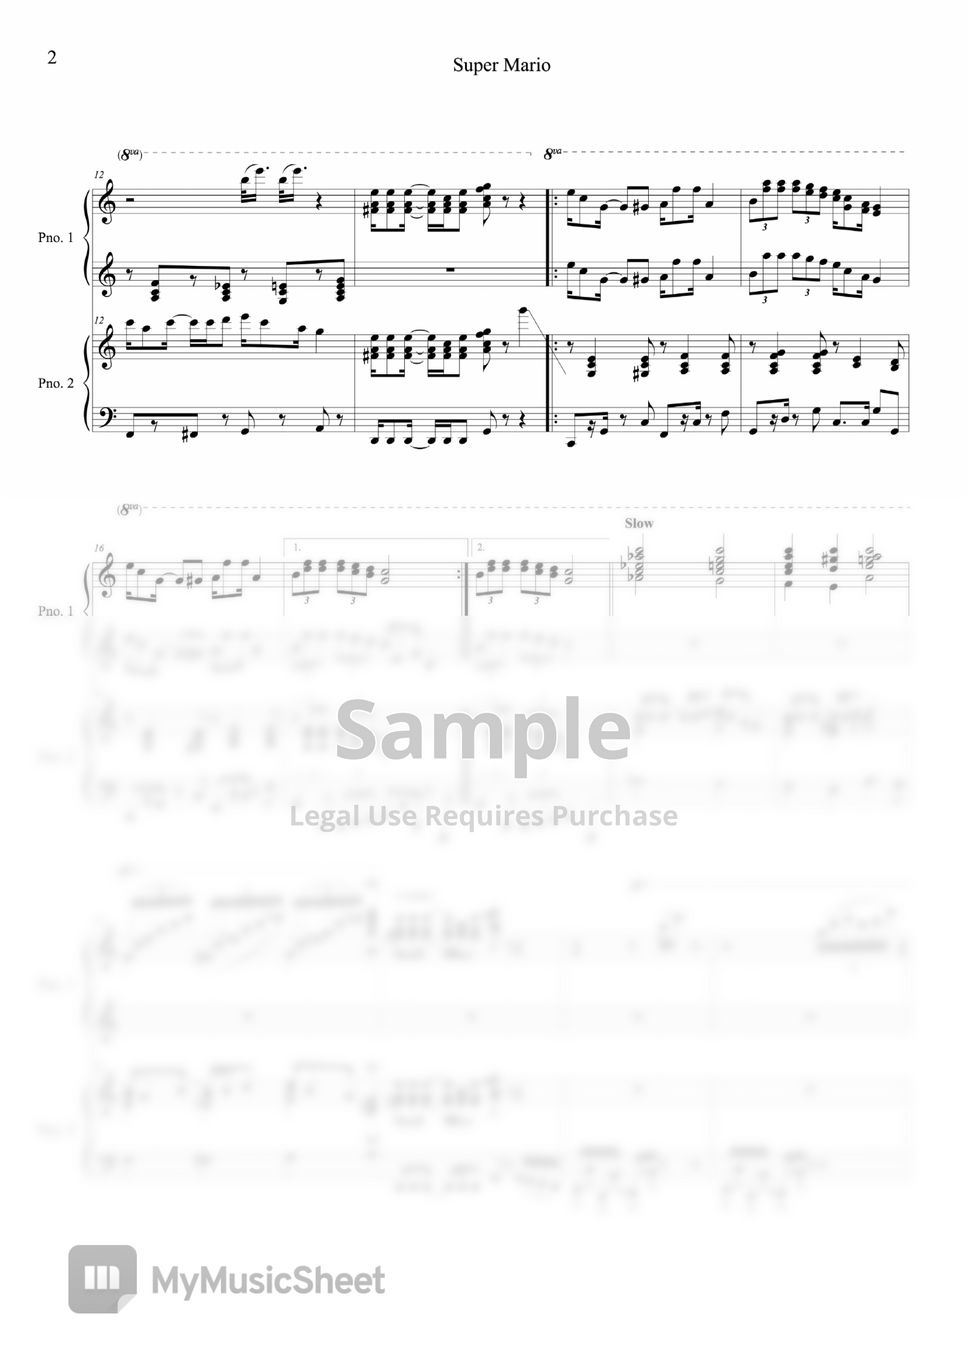 Super Mario - Super Mario Medley (4hands piano) by BELLA&LUCAS